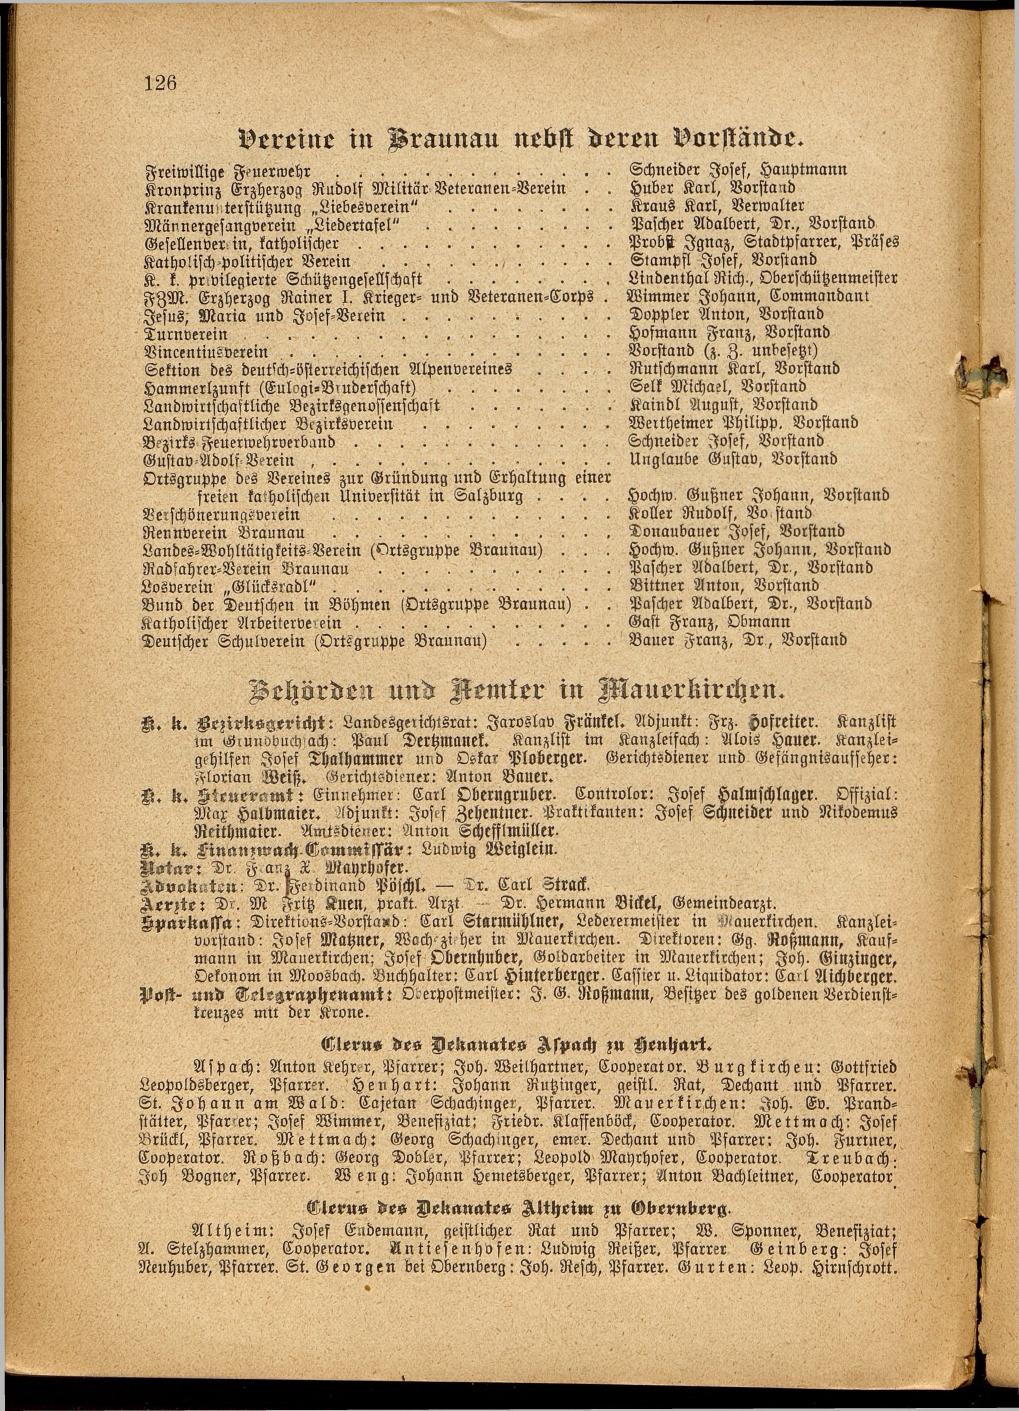 Illustrierter Braunauer-Kalender für das Jahr 1904 - Seite 130